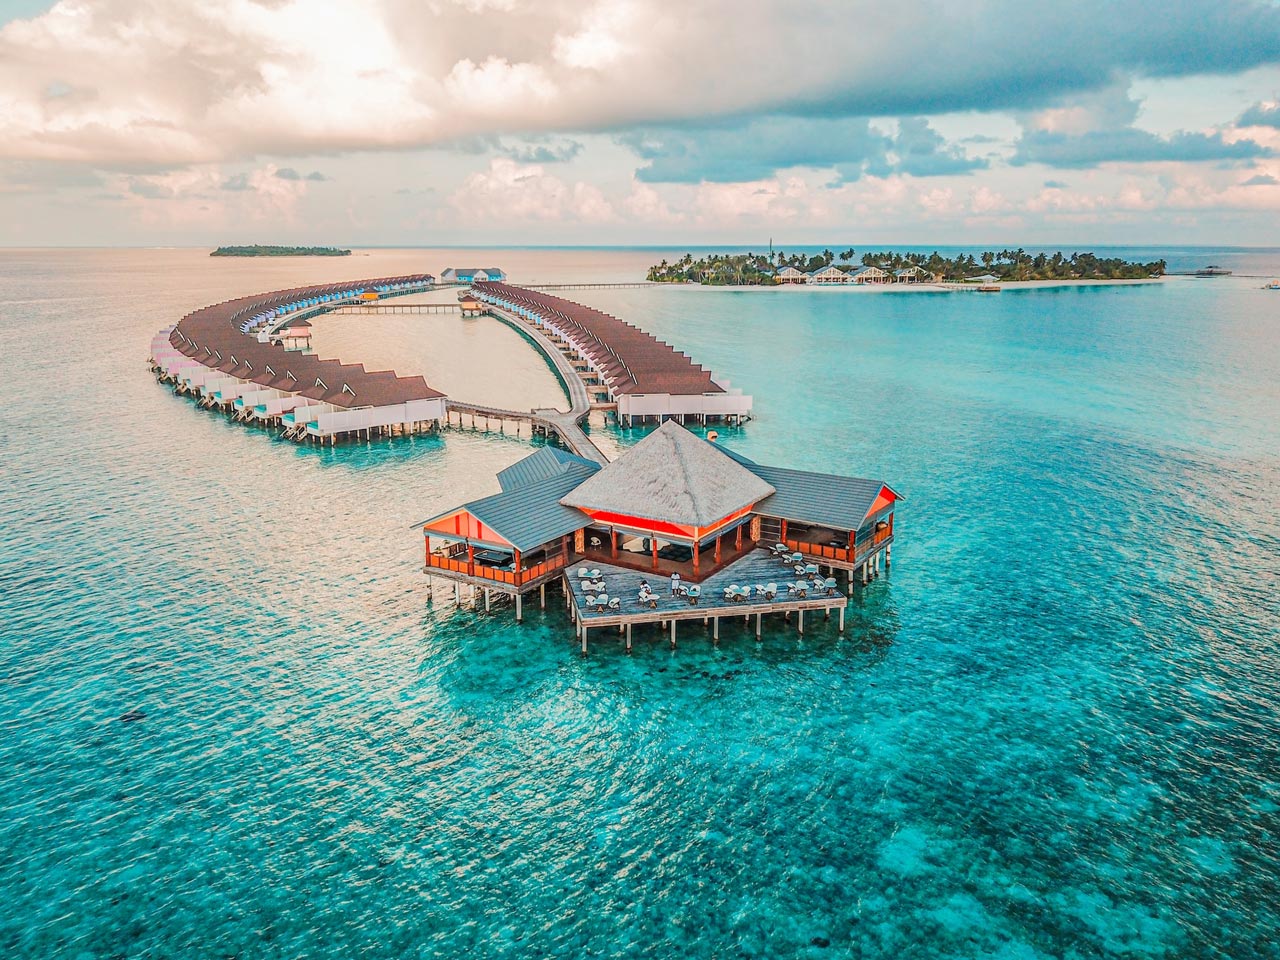 Villas in The Maldives.